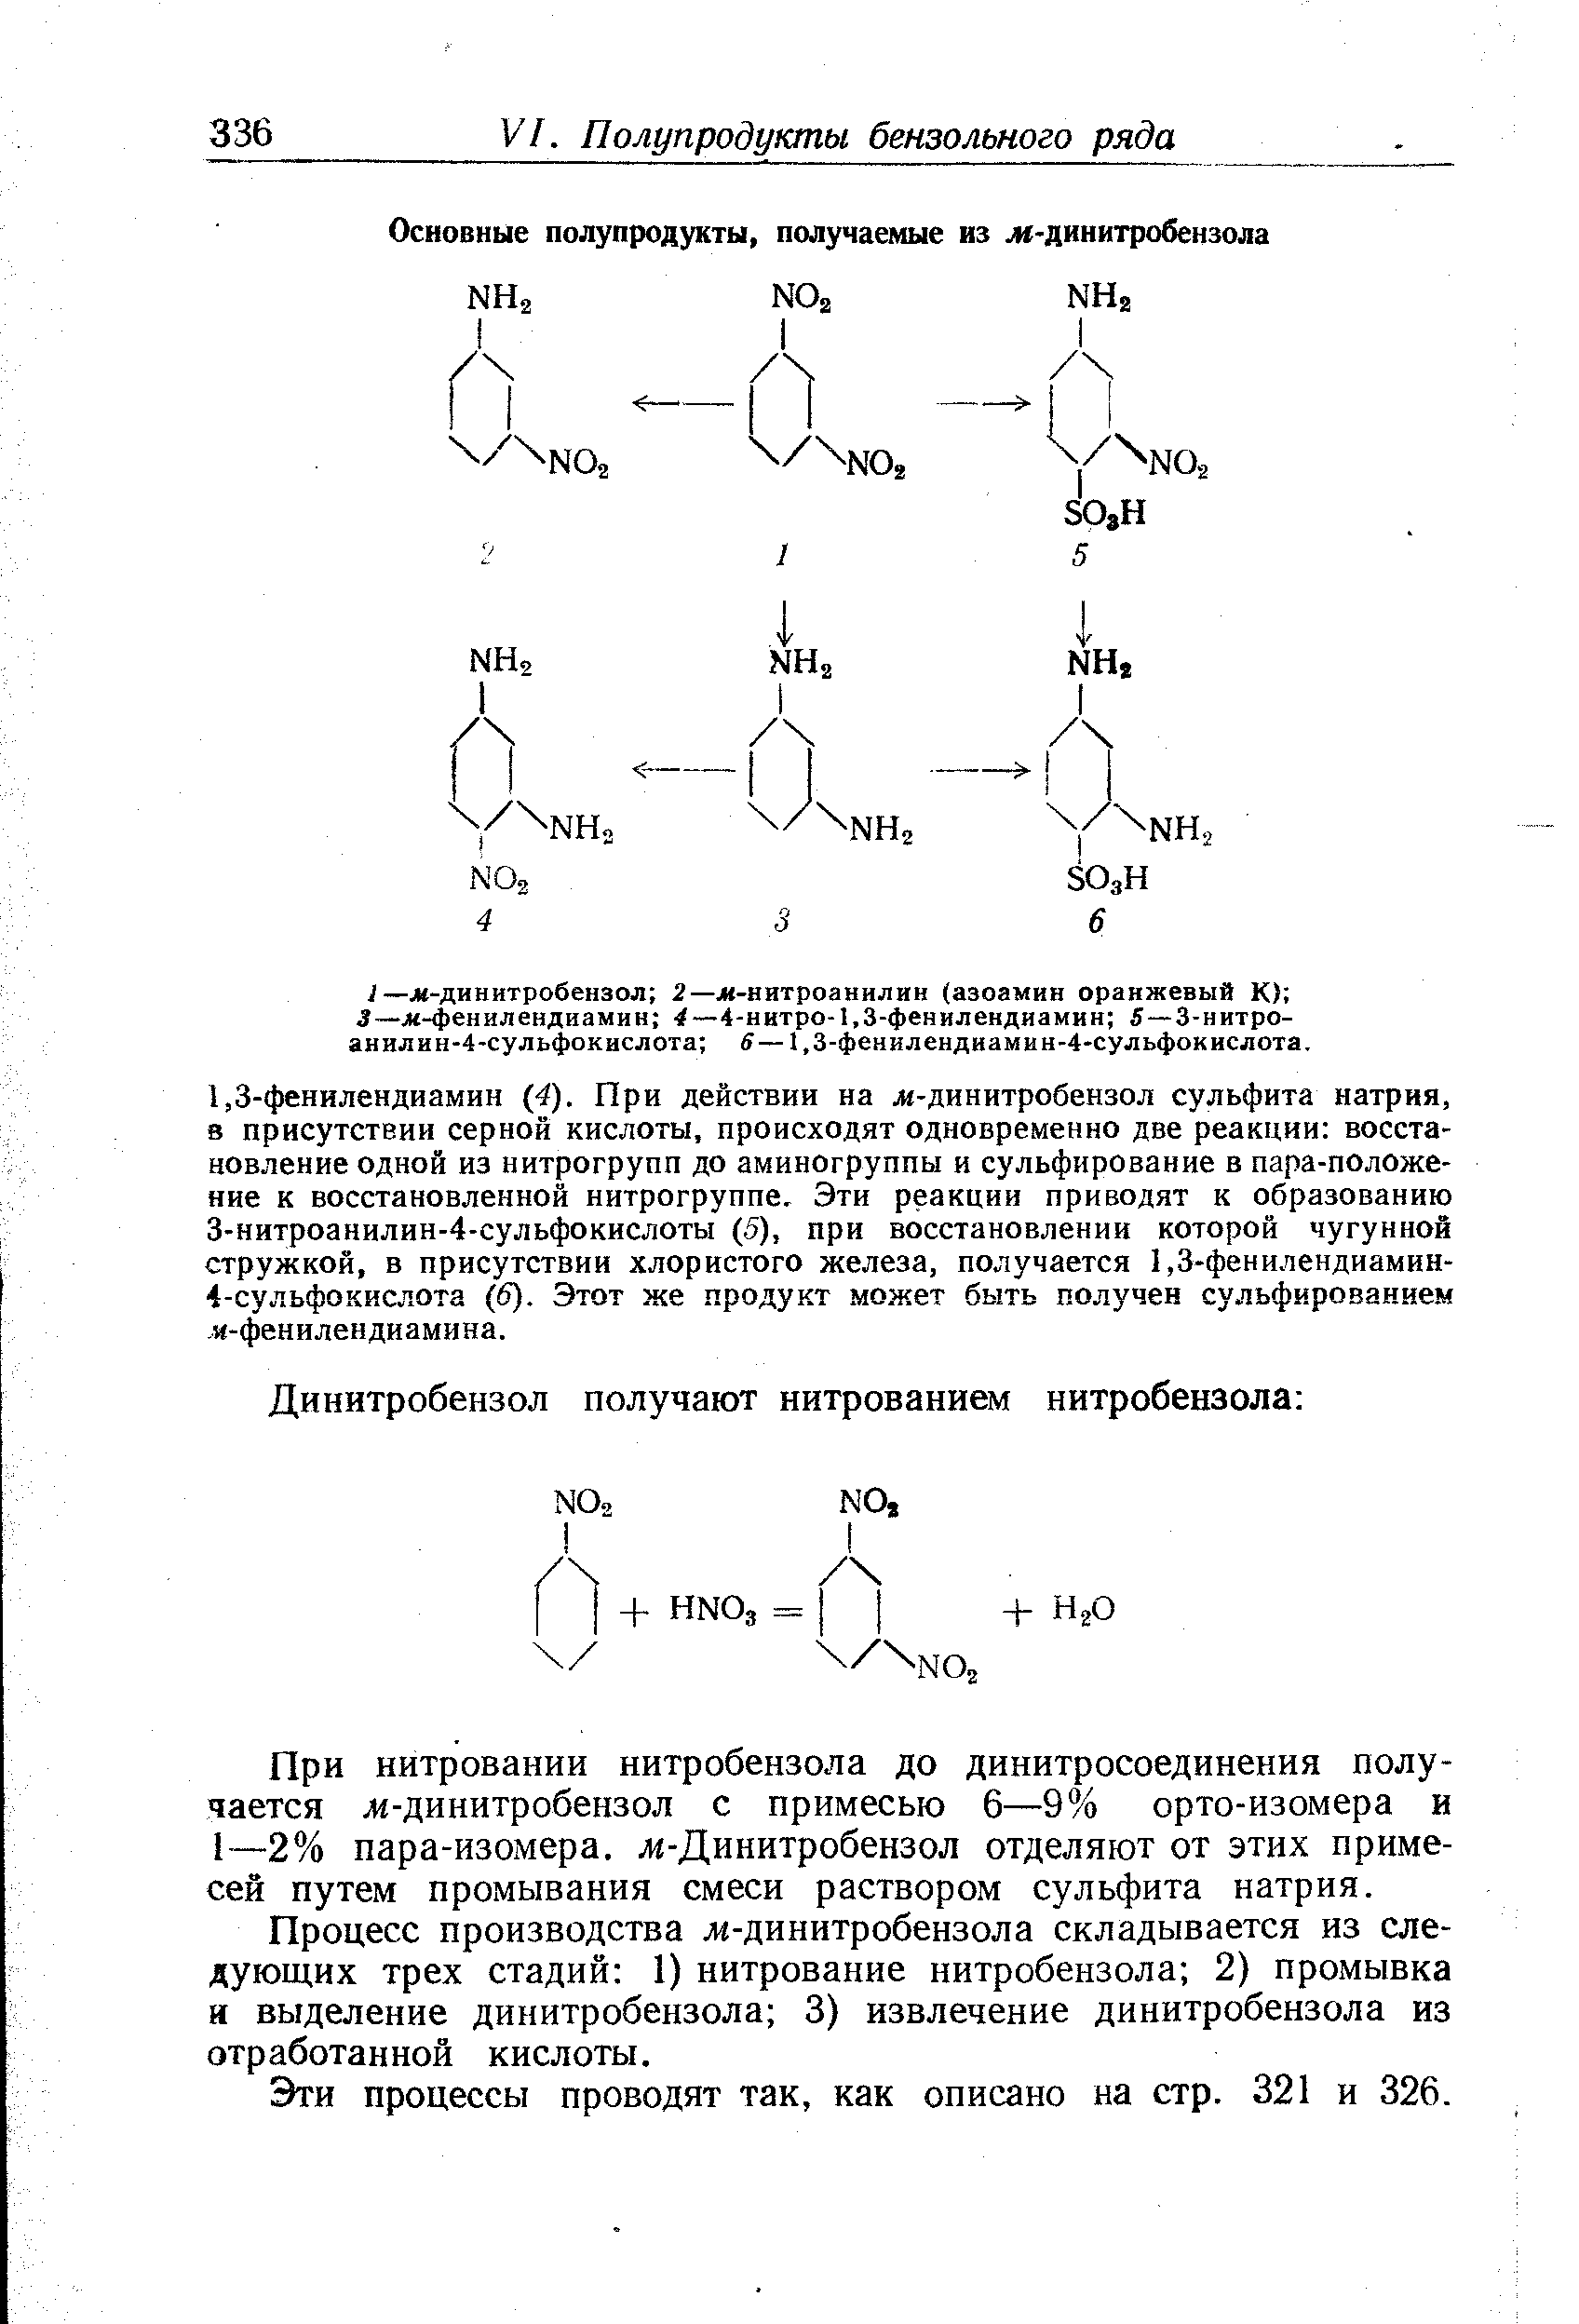 Процесс производства лг-динитробензола складывается из следующих трех стадий 1) нитрование нитробензола 2) промывка и выделение динитробензола 3) извлечение динитробензола из отработанной кислоты.